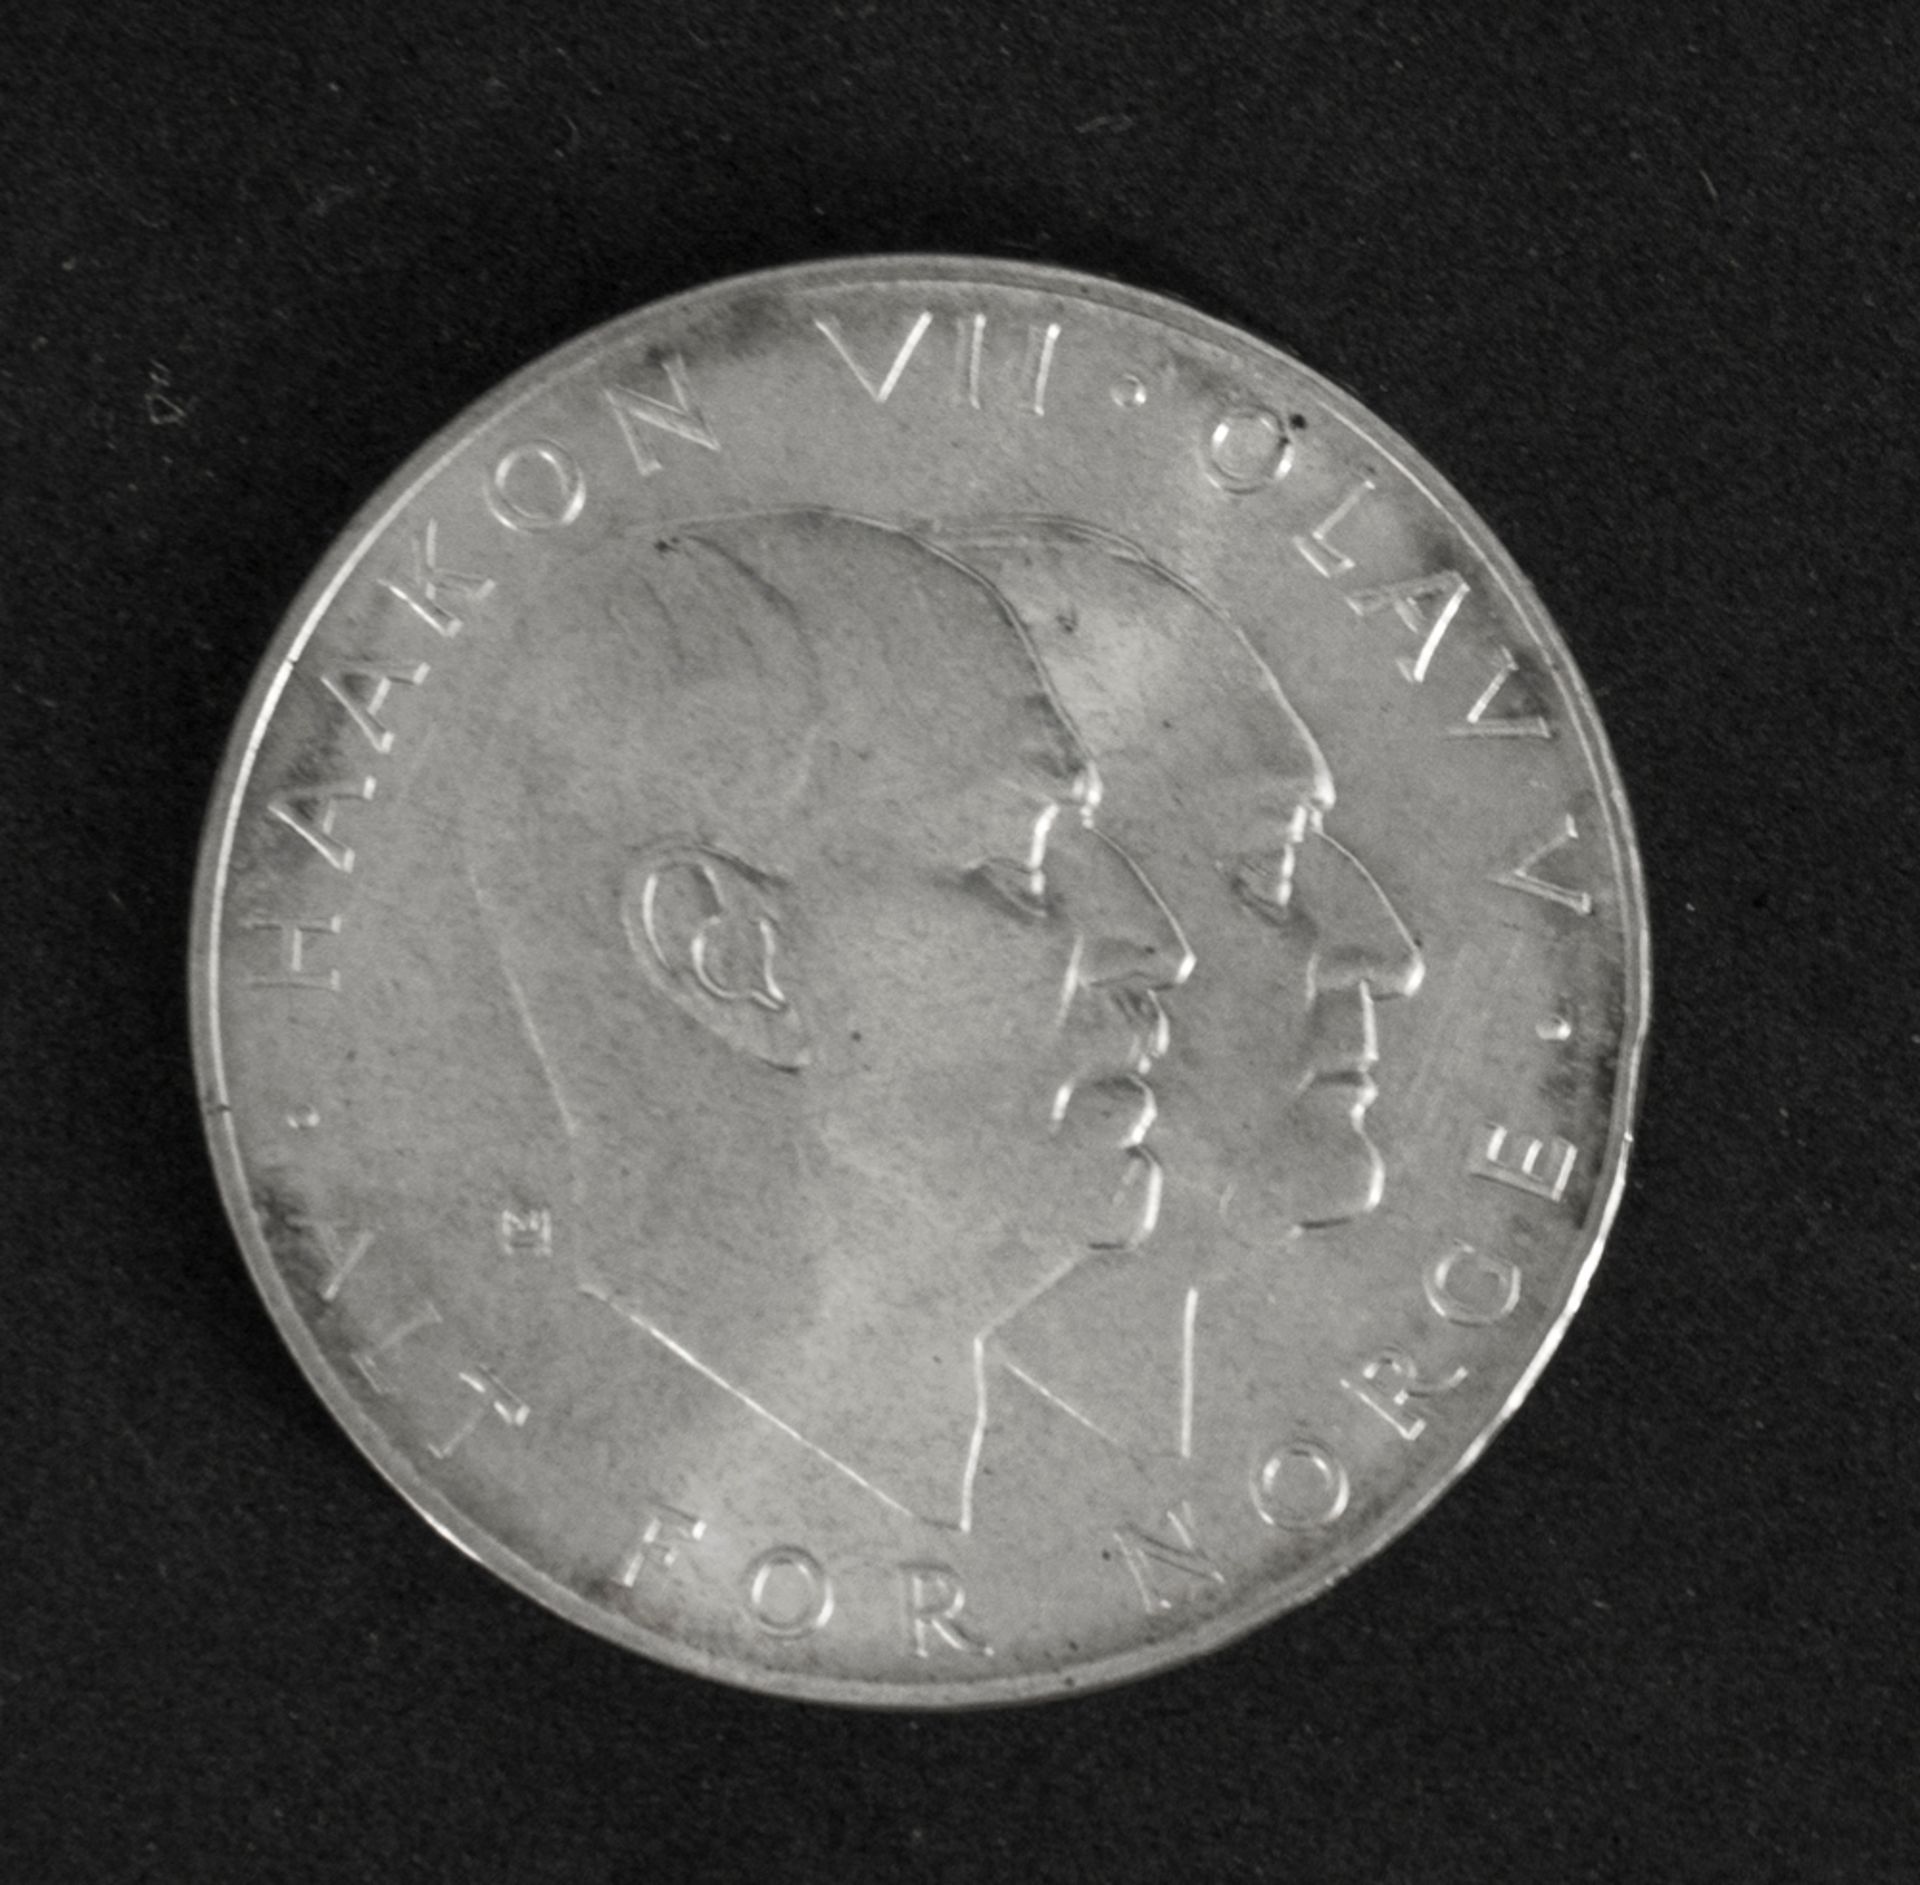 Norwegen 1970, 25 Koroner - Silbermünze "Haakonen VII. und Olav V.". Erhaltung: ss.